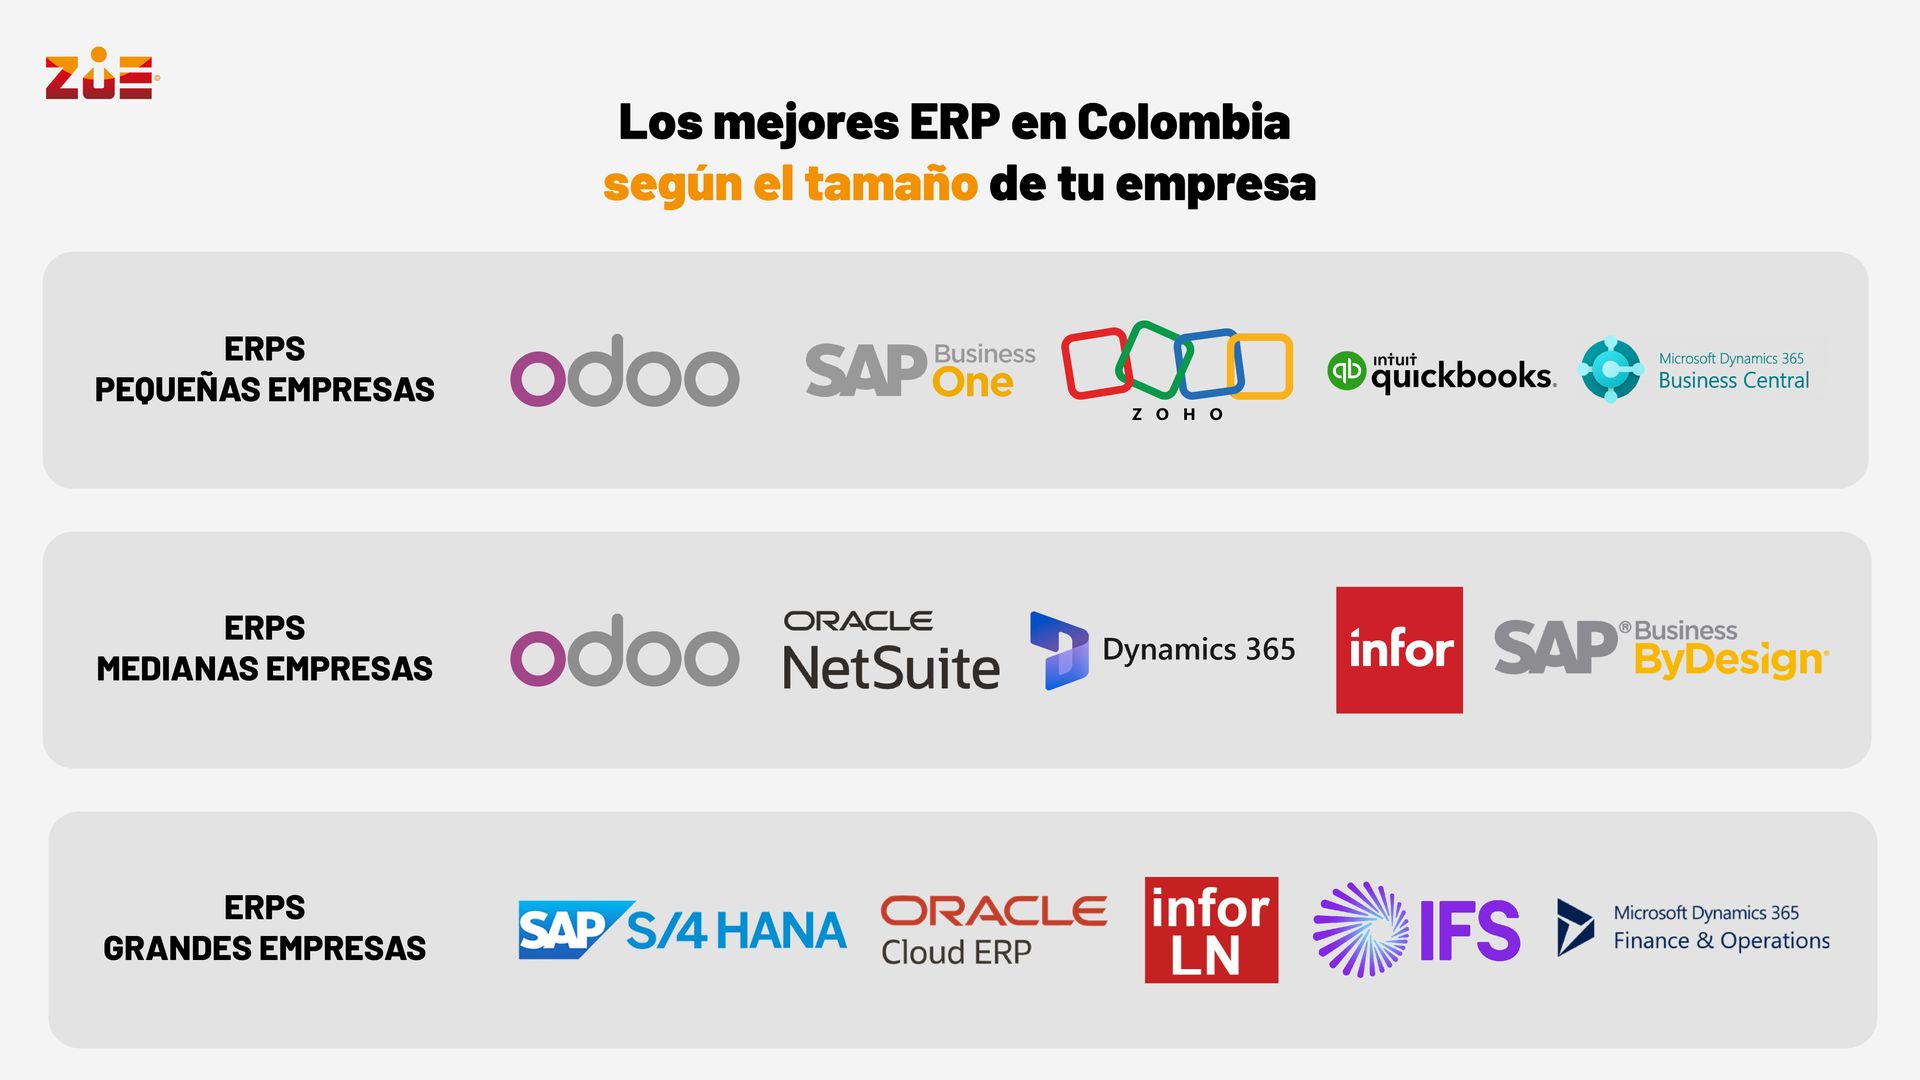 Los mejores ERP en Colombia según el tamaño de tu empresa